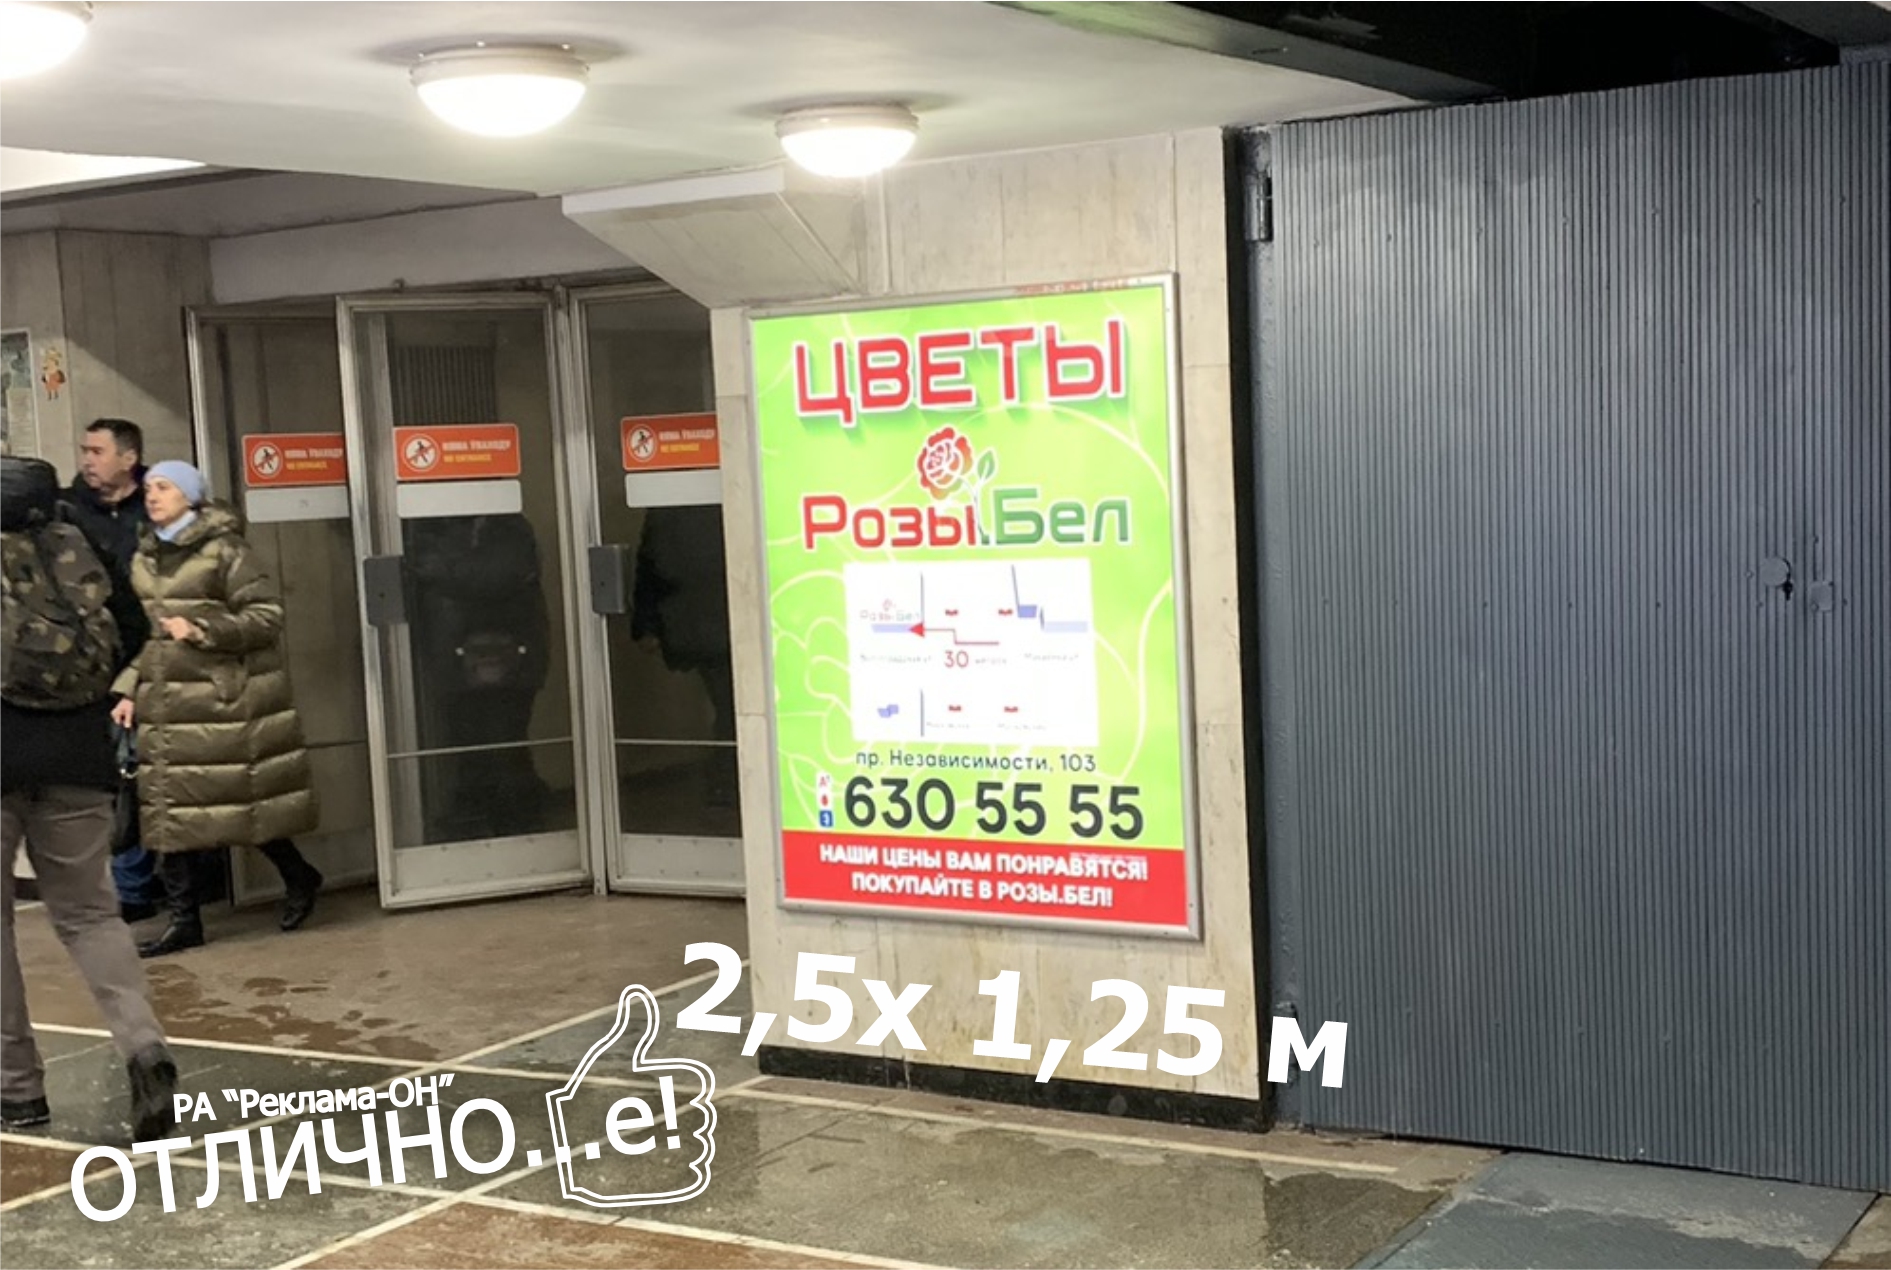 Ультраяркий световой лайтбокс на станции метро Октябрьская (переход) reklama-on.by